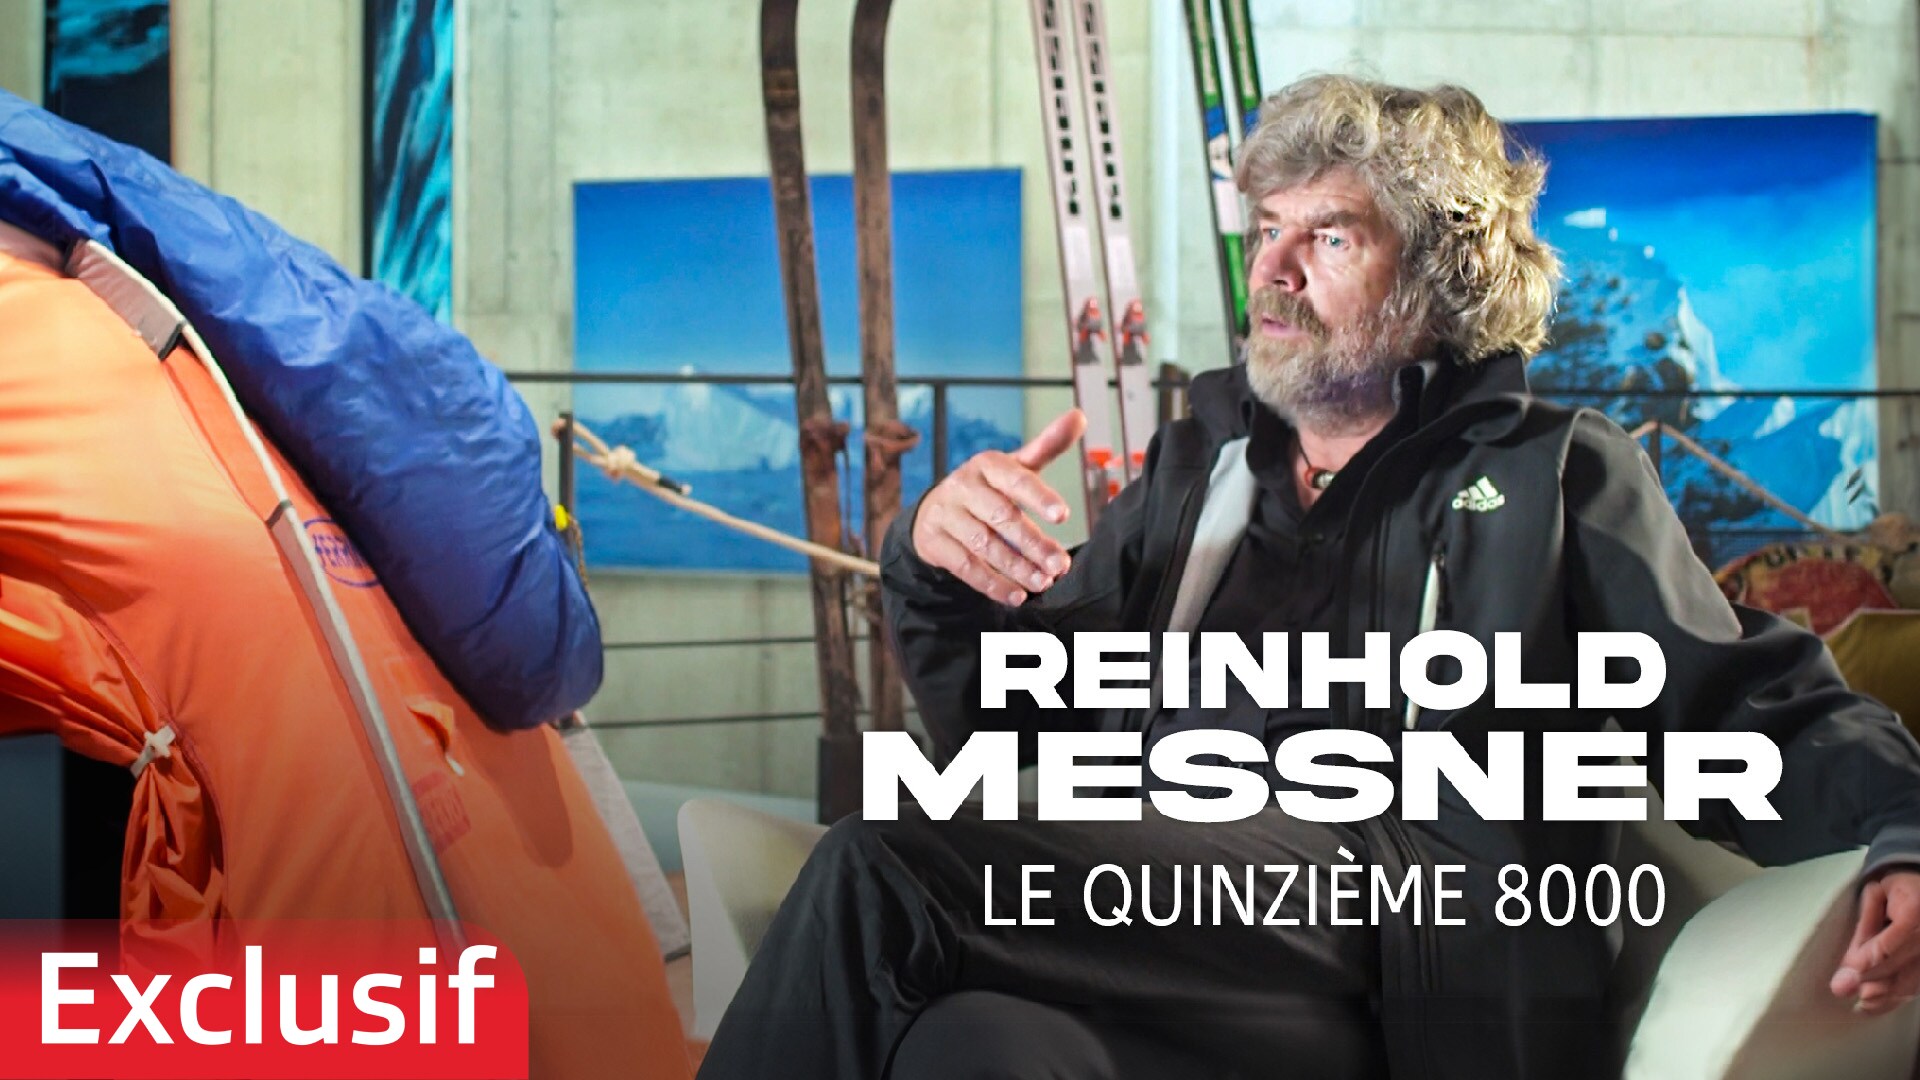 Reinhold Messner, le quinzième 8000